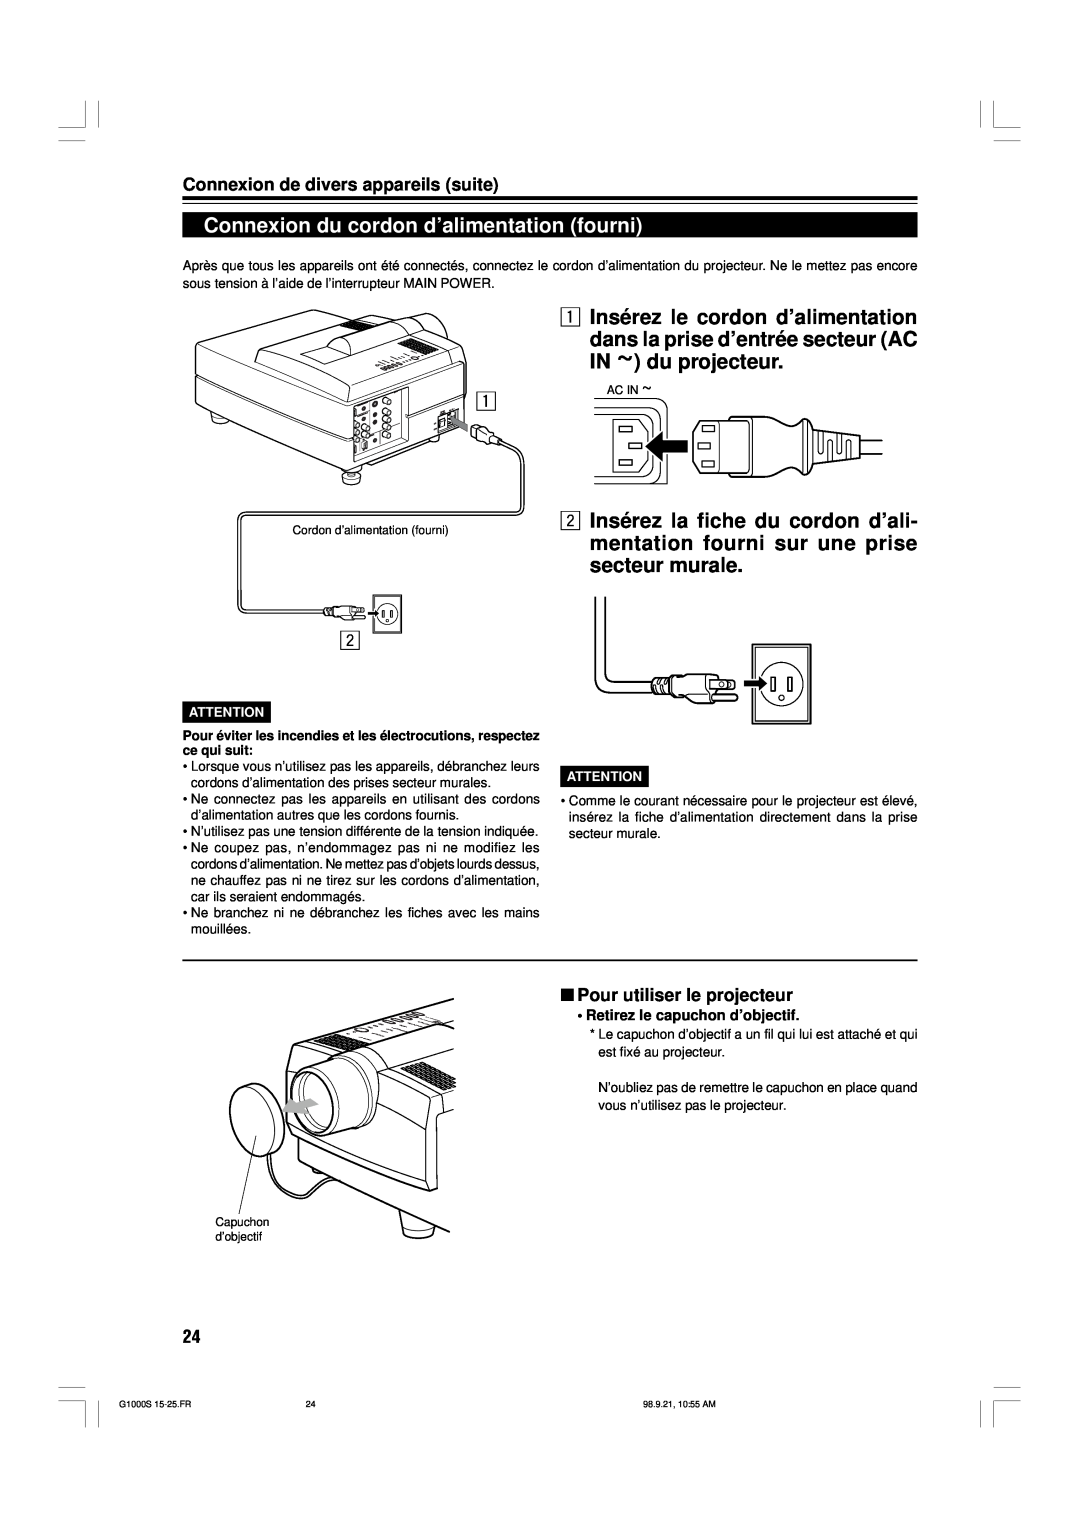 JVC G1000S Connexion du cordon d’alimentation fourni, 1 Insérez le cordon d’alimentation, Pour utiliser le projecteur 